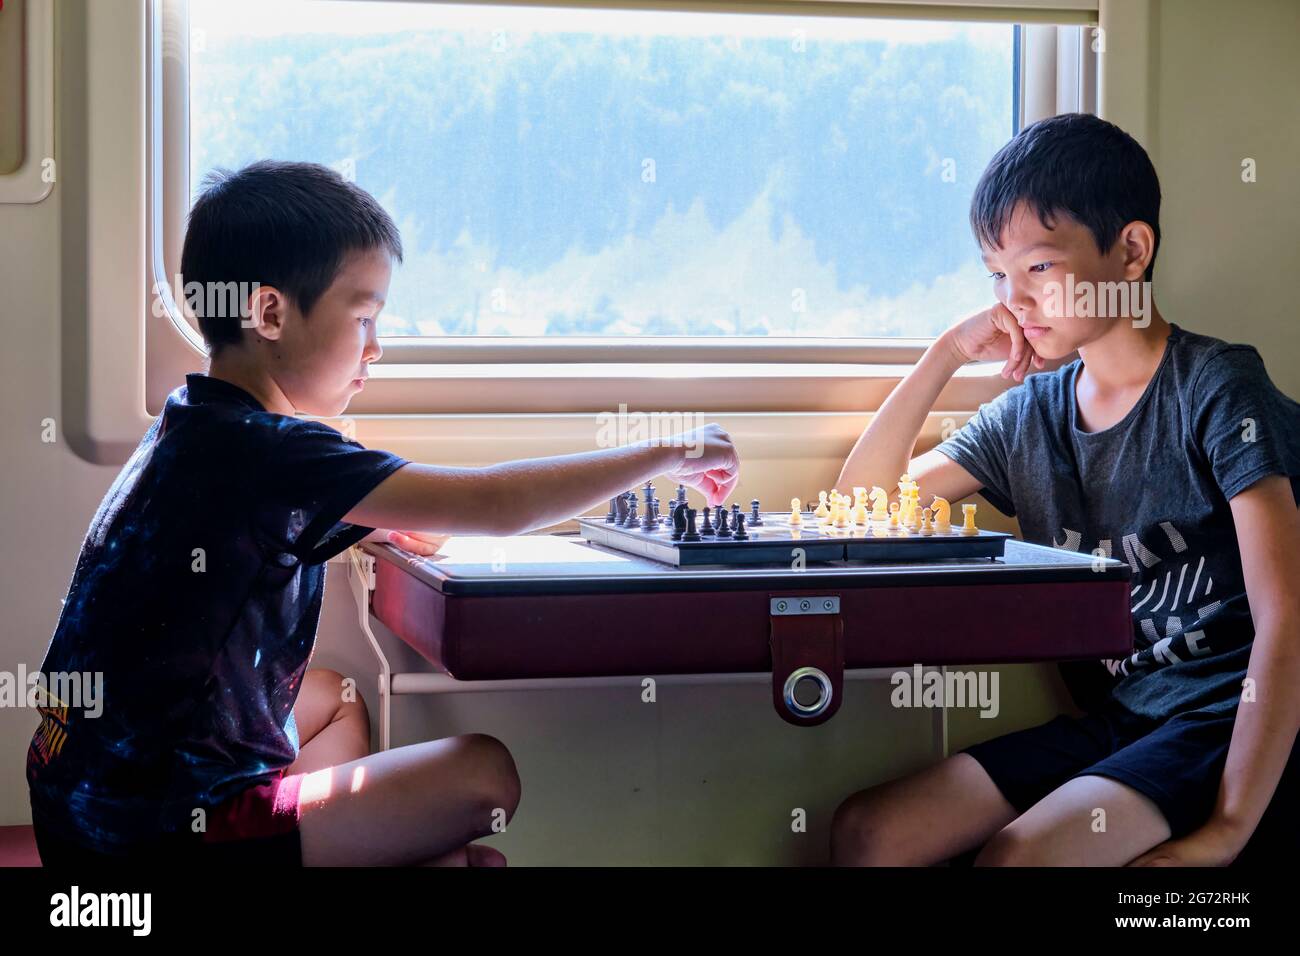 Jeunes garçons jouant aux échecs près de la fenêtre en train Voyage, concept de jeux de société Banque D'Images